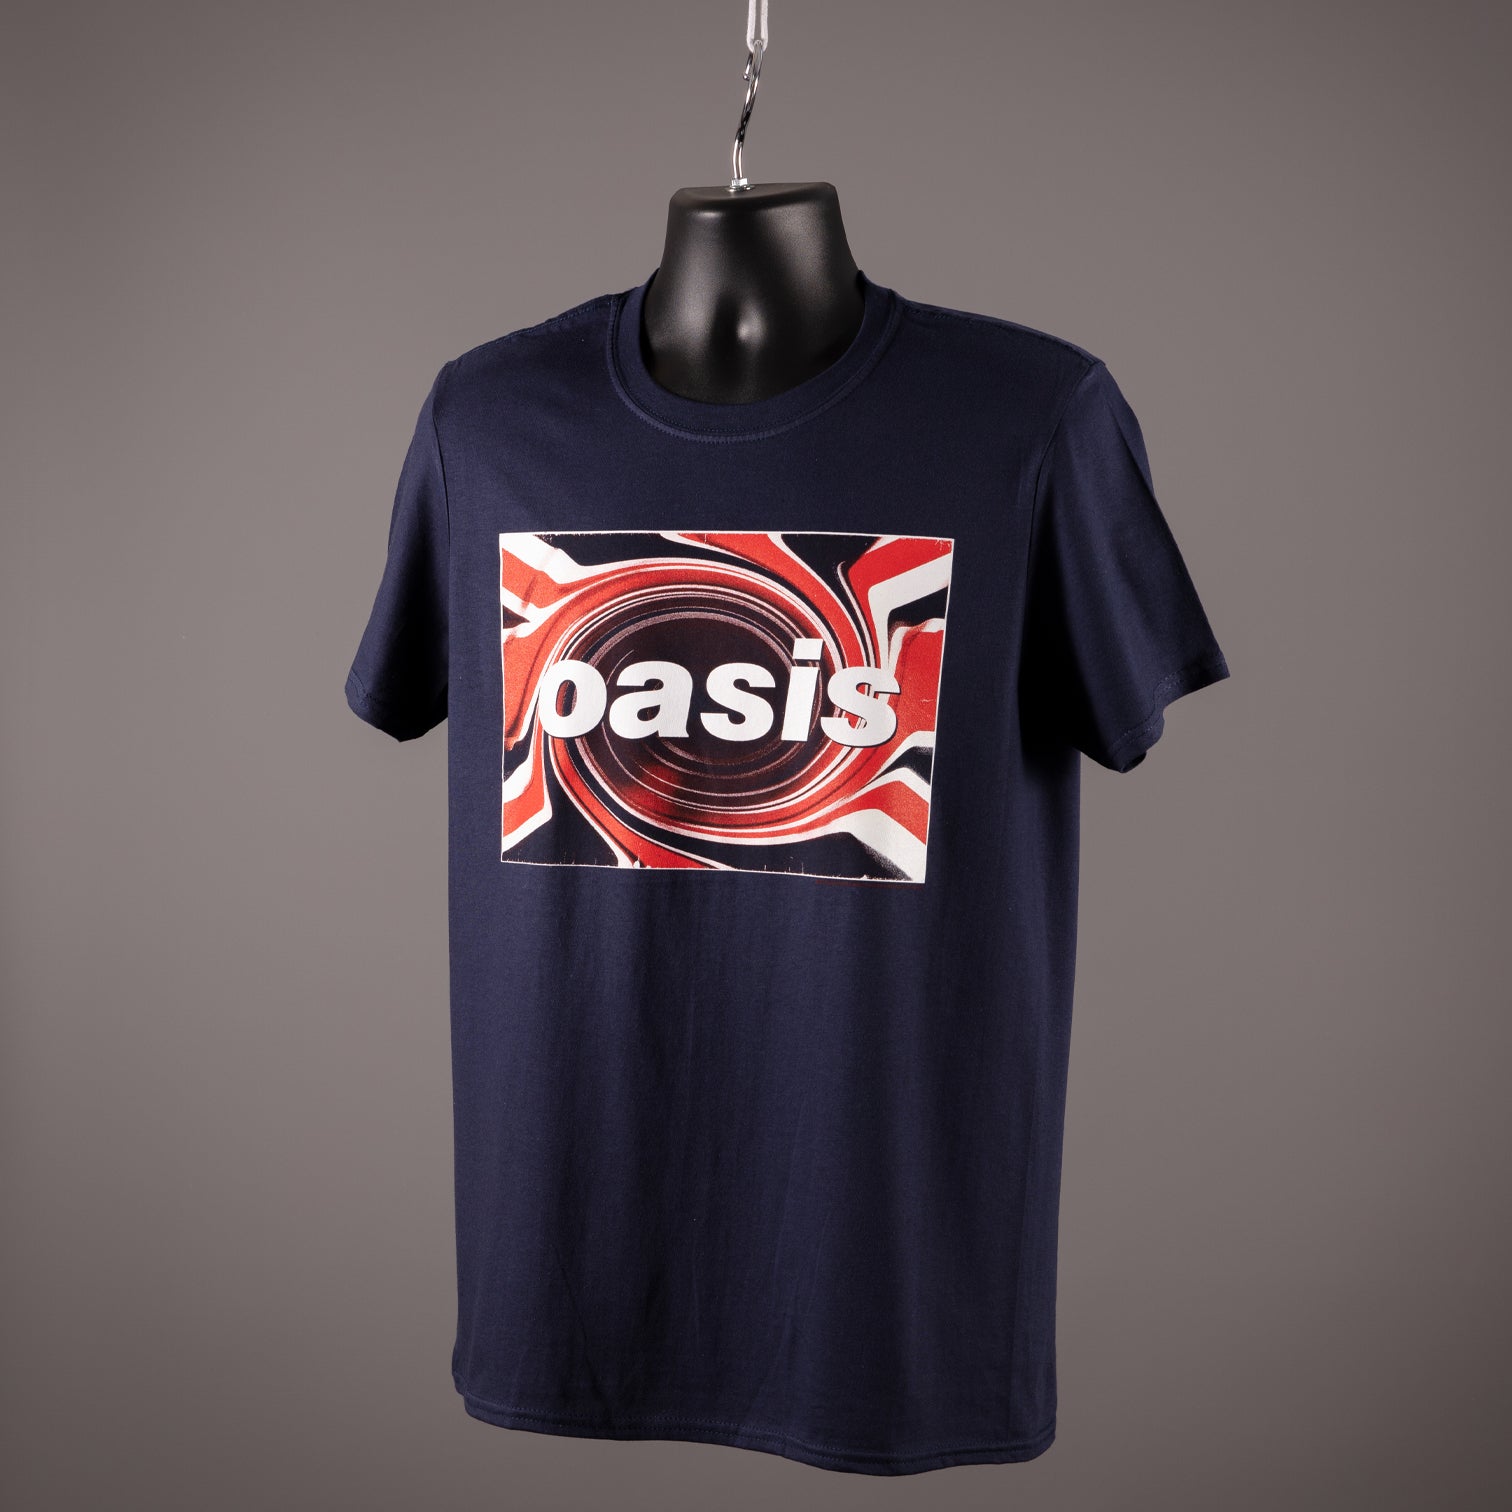 Oasis - Union Jack T Shirt